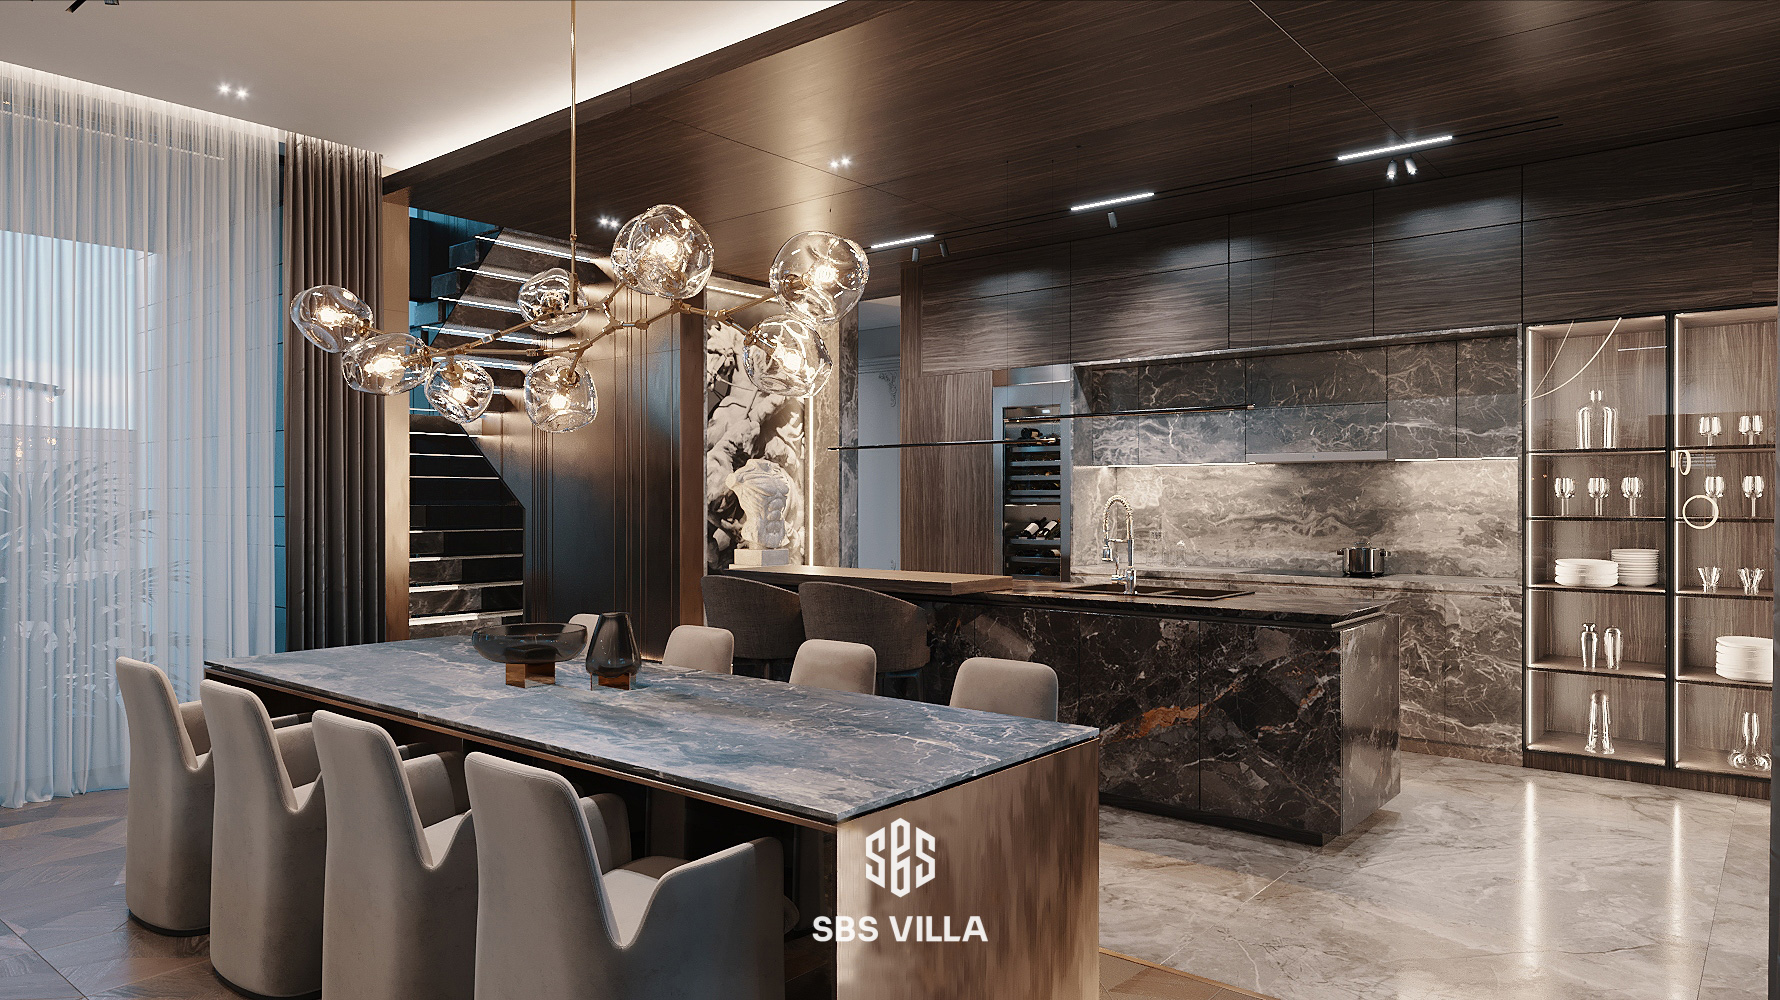 phòng bếp đẹp hiện đại sử dụng chất liệu cao cấp như đá marble, thủy tính, da,... kiến tạo nên tổng thể không gian 